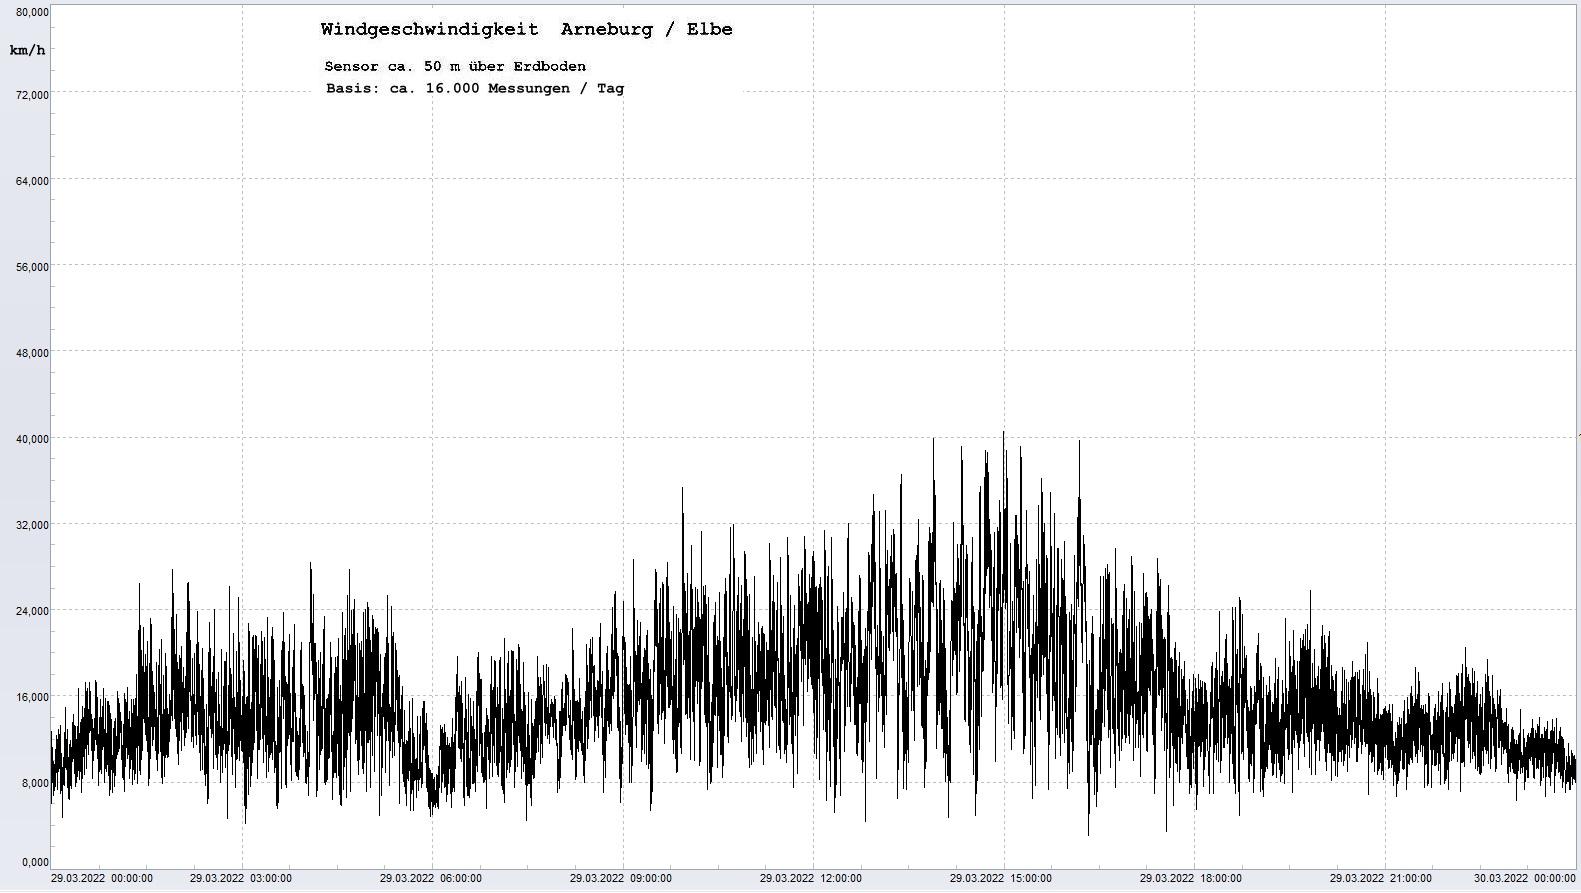 Arneburg Tages-Diagramm Winddaten, 29.03.2022
  Diagramm, Sensor auf Gebude, ca. 50 m ber Erdboden, Basis: 5s-Aufzeichnung